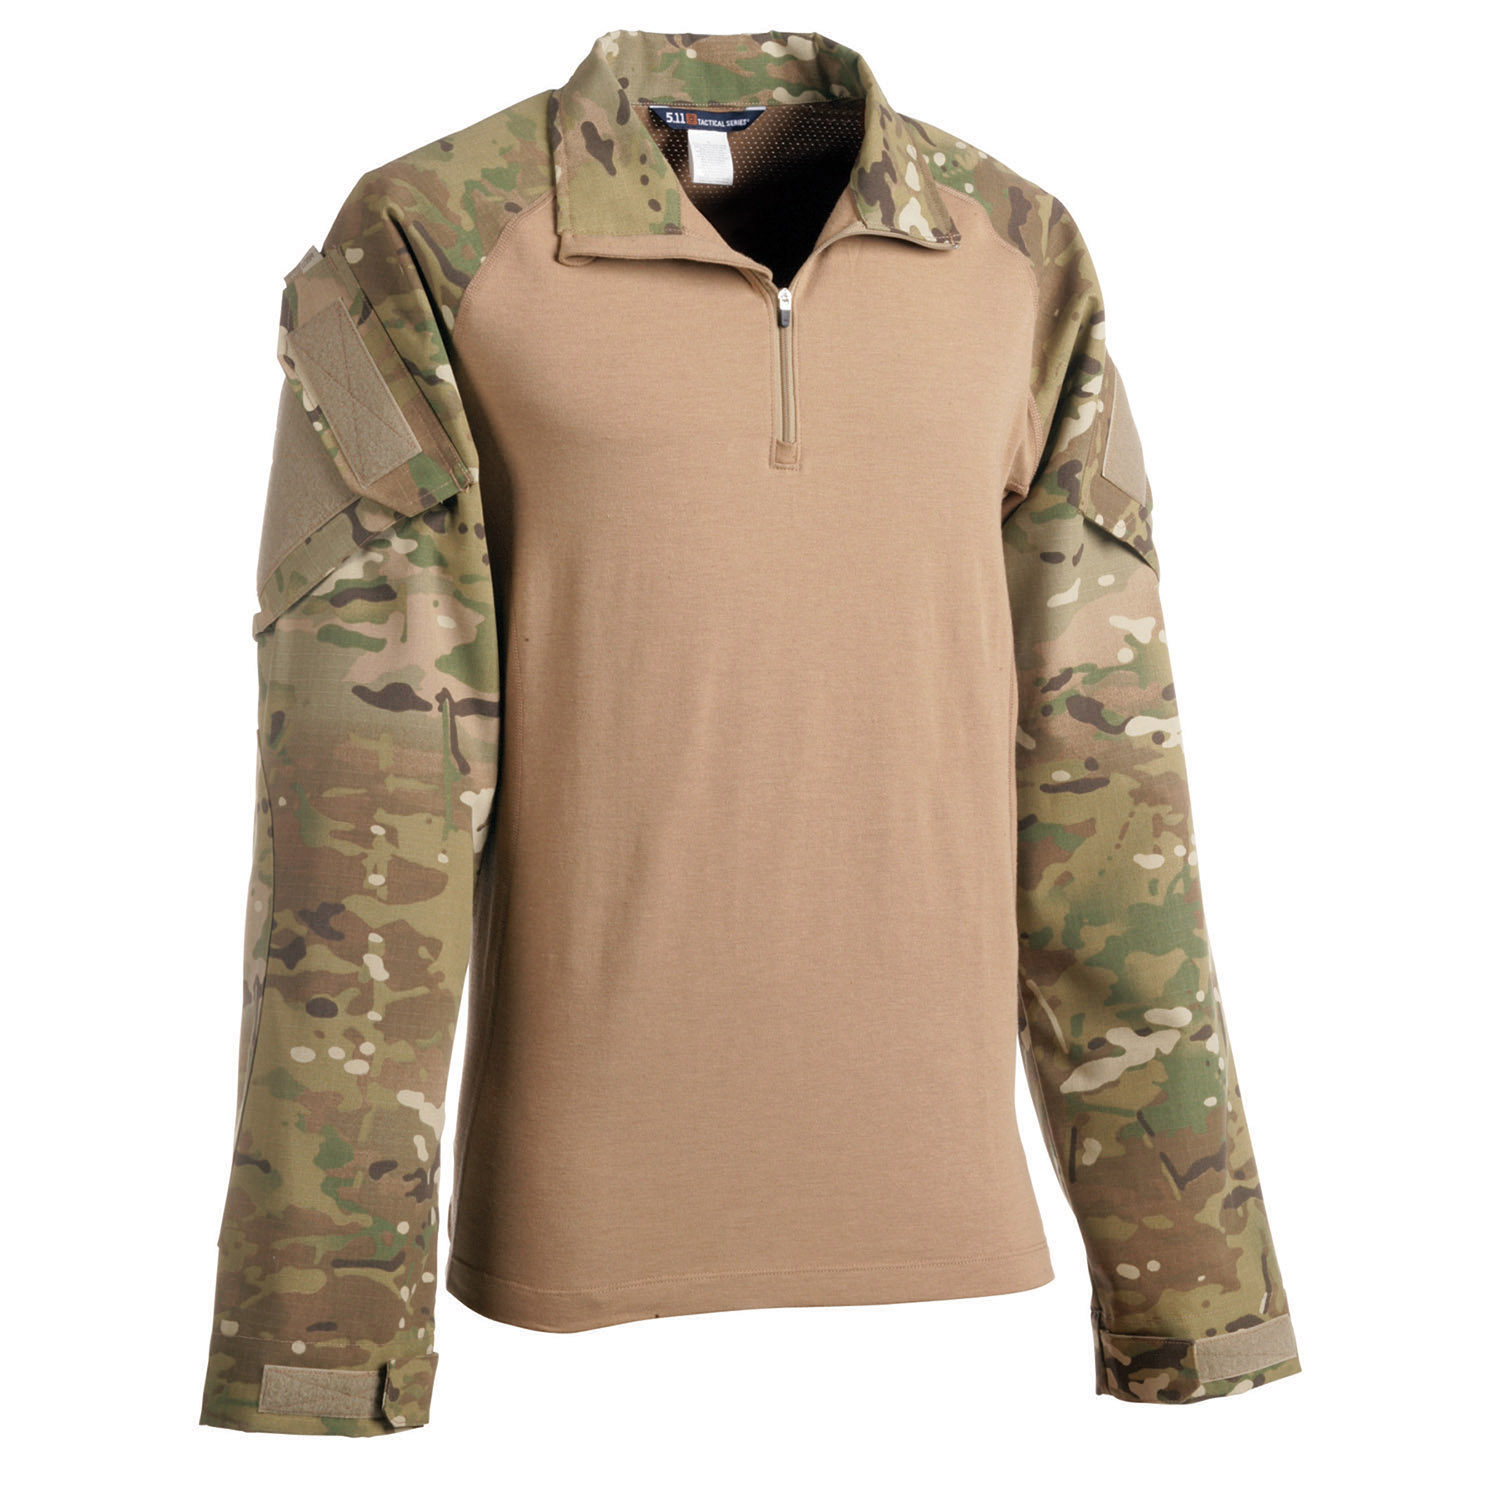 Under Armour Tactical Combat Shirt, Combat Shirts